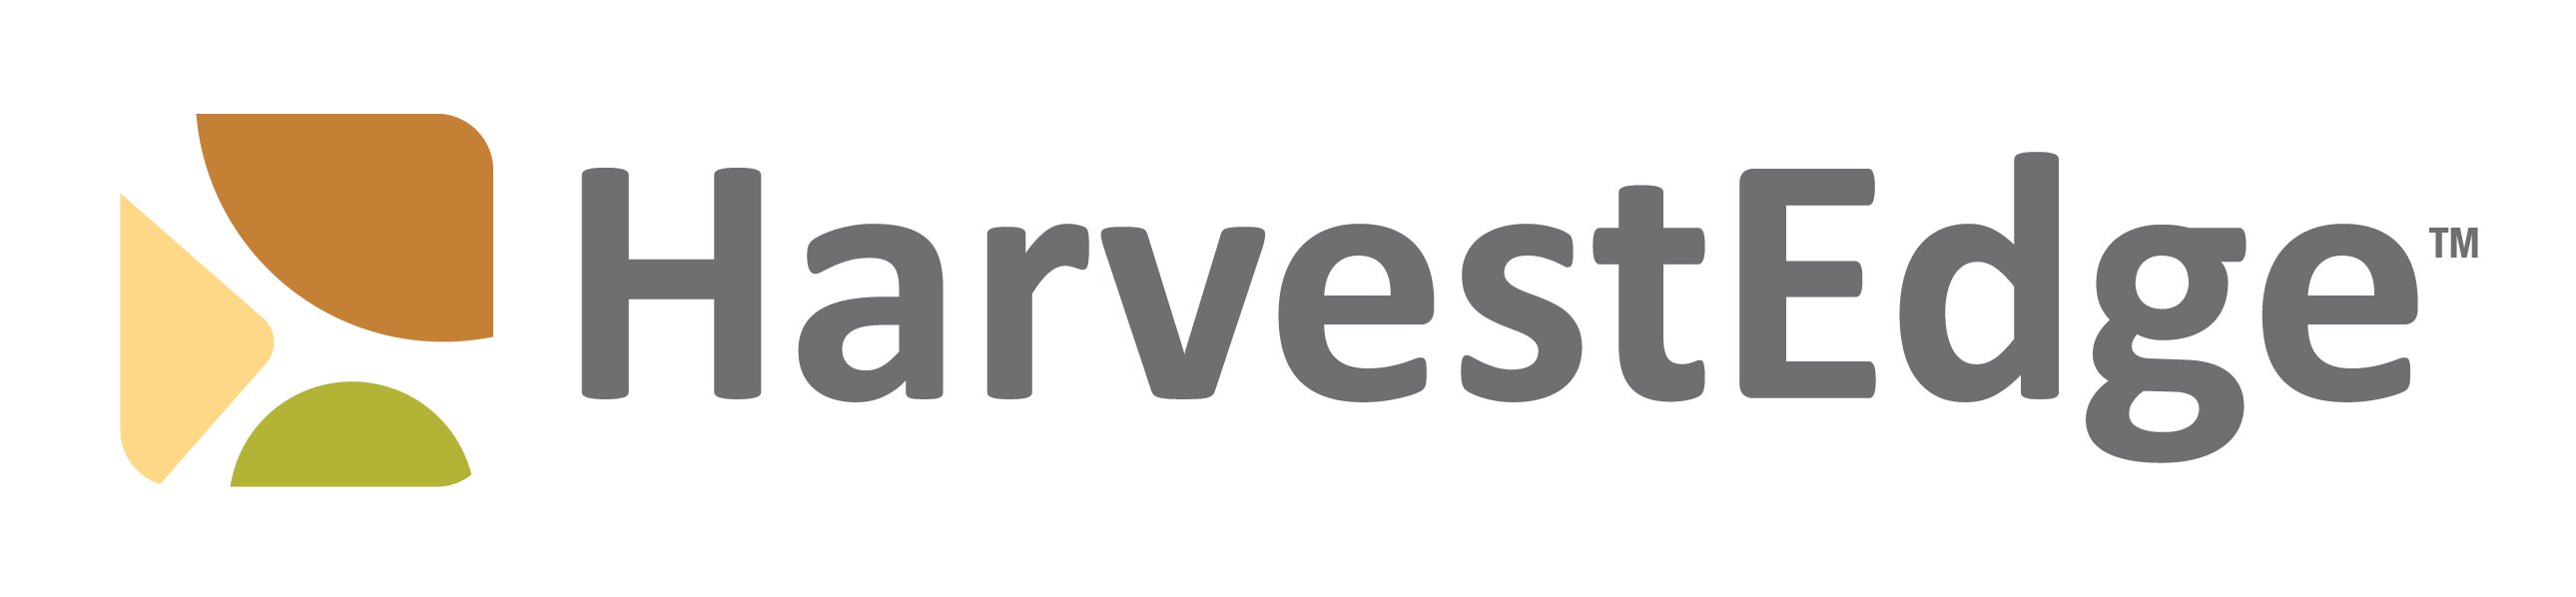 HarvestEdge brand logo